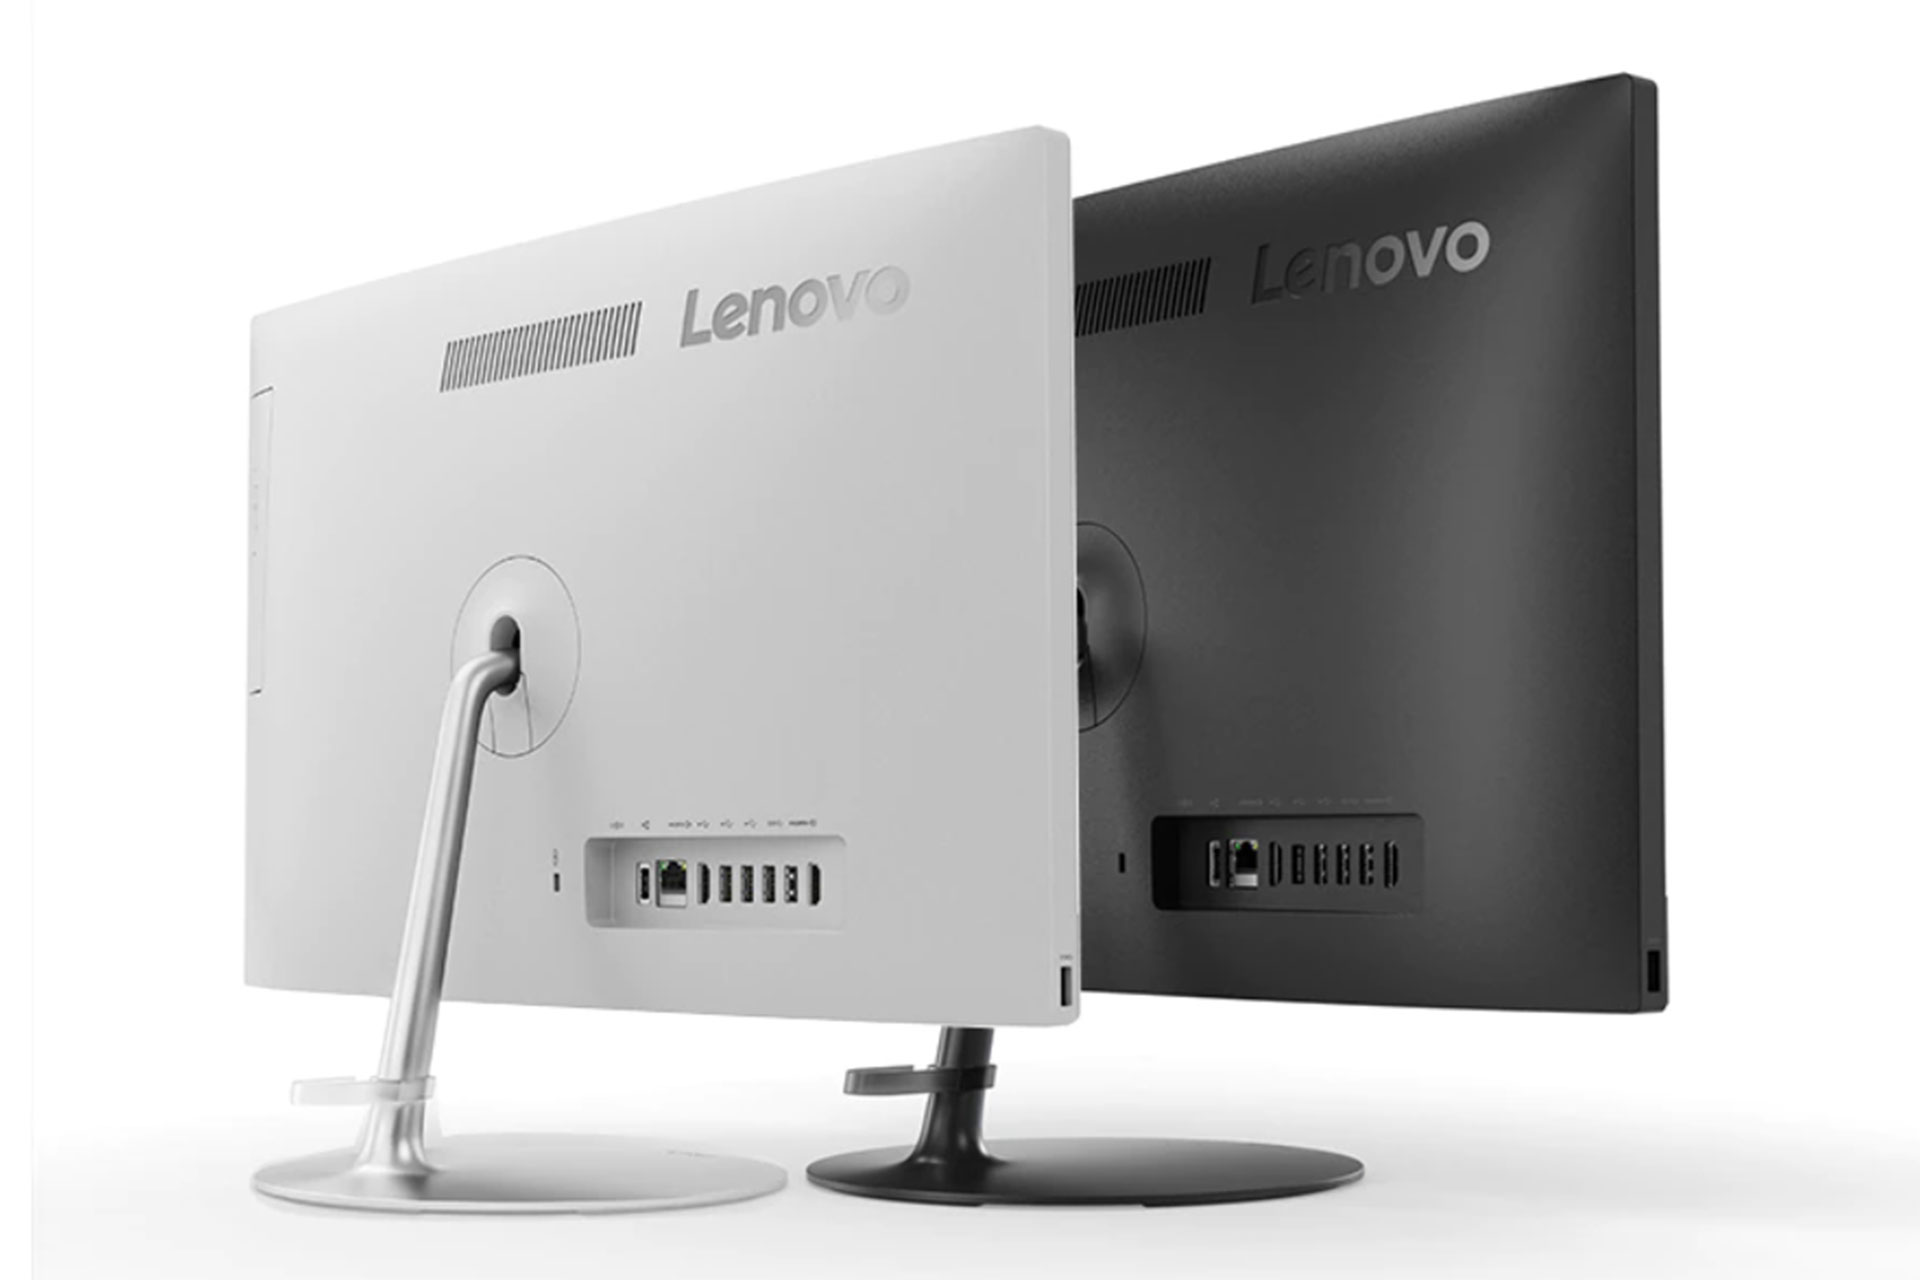 کامپیوتر همه کاره Lenovo AIO520 با صفحه